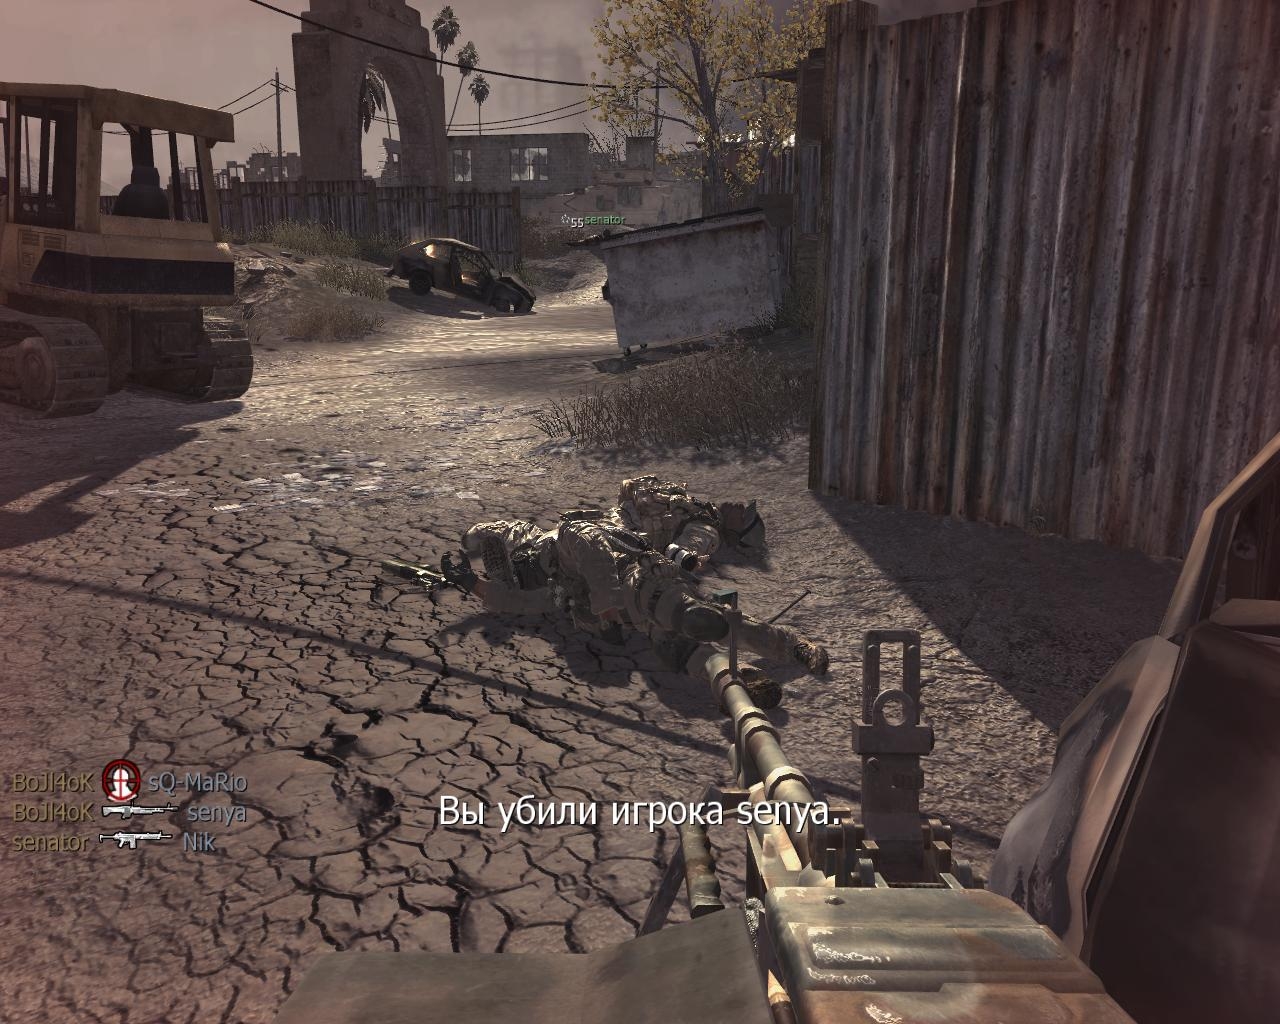 Игра кол дьюти 4. Call of Duty скрины из игры. Call of Duty 4 Modern Warfare Скриншоты. Call of Duty: Modern Warfare 4 скрины из игры. Снимки из игры Call of Duty 4.